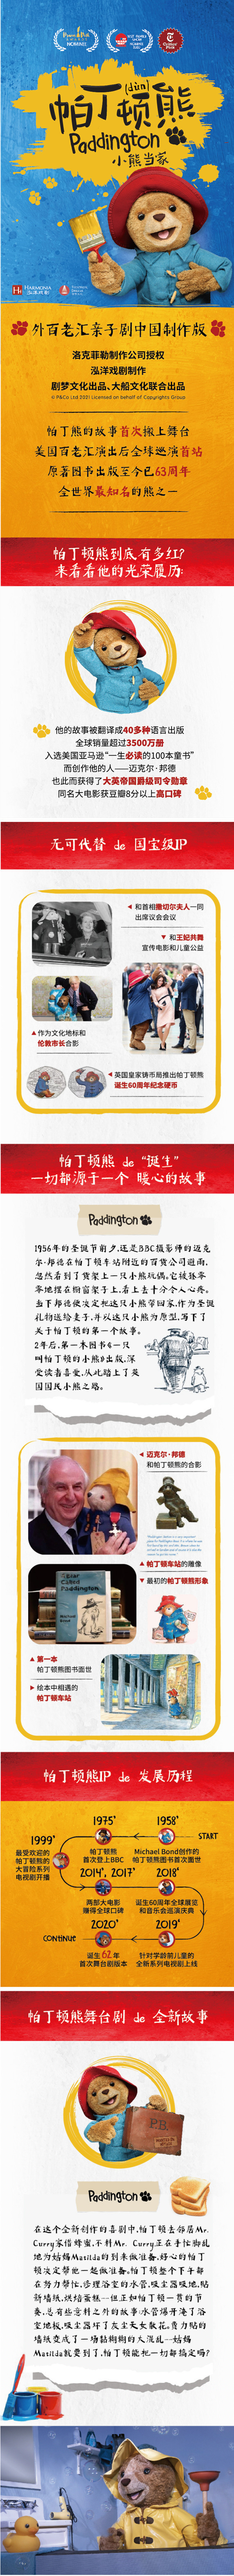 2021大船文化·外百老汇亲子剧《帕丁顿熊之小熊当家》中国制作版-杭州站